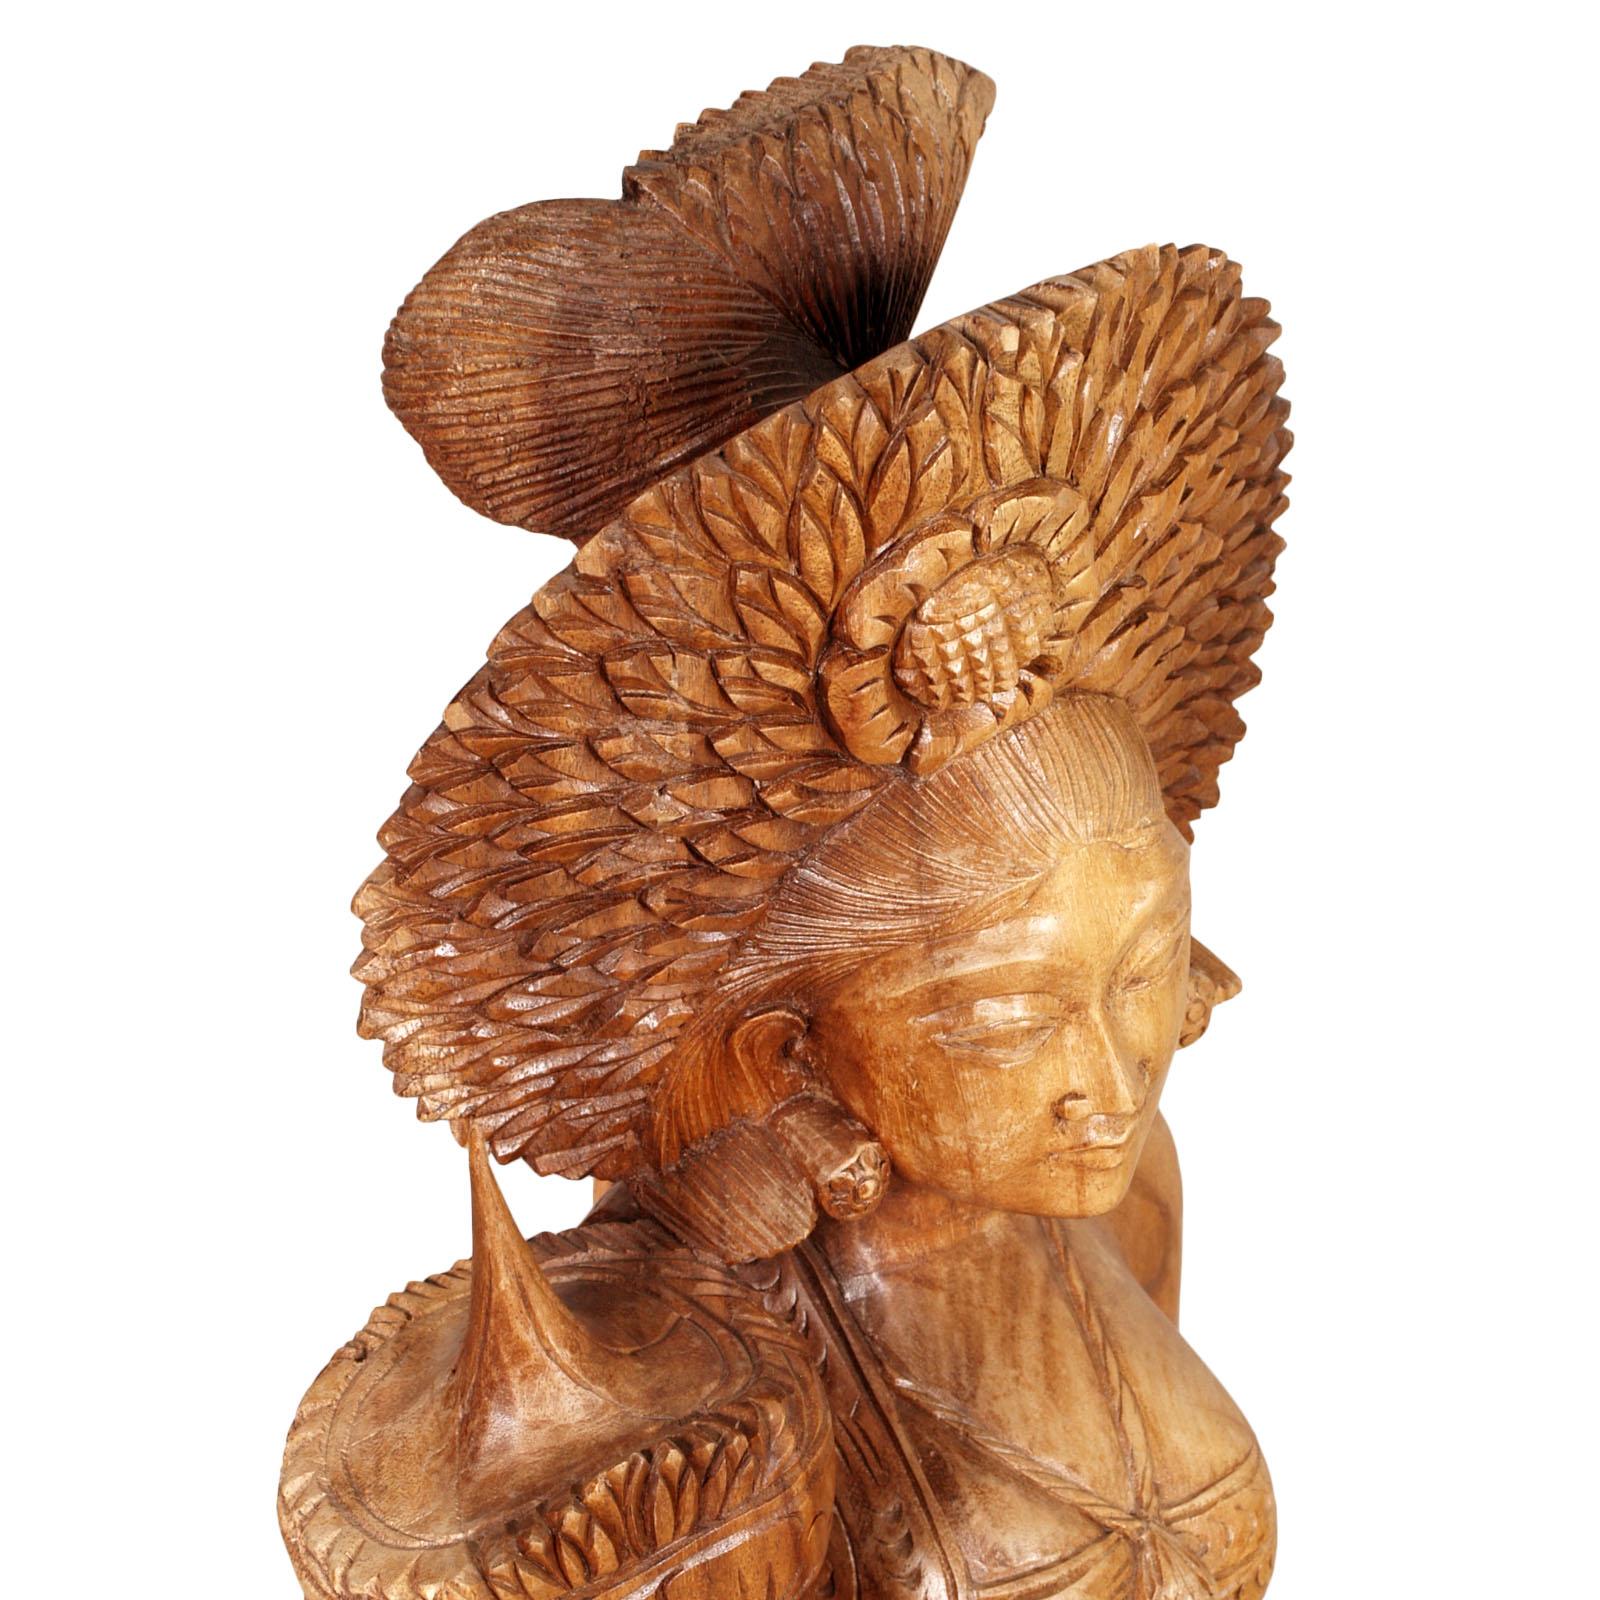 1920-1930 three Hindu deities of the Siam, hand-carved exotic hardwood

n. 1 measures cm: H 150, W 35, D 25 
n.2 measure cm: H 102, W 35, D 25.